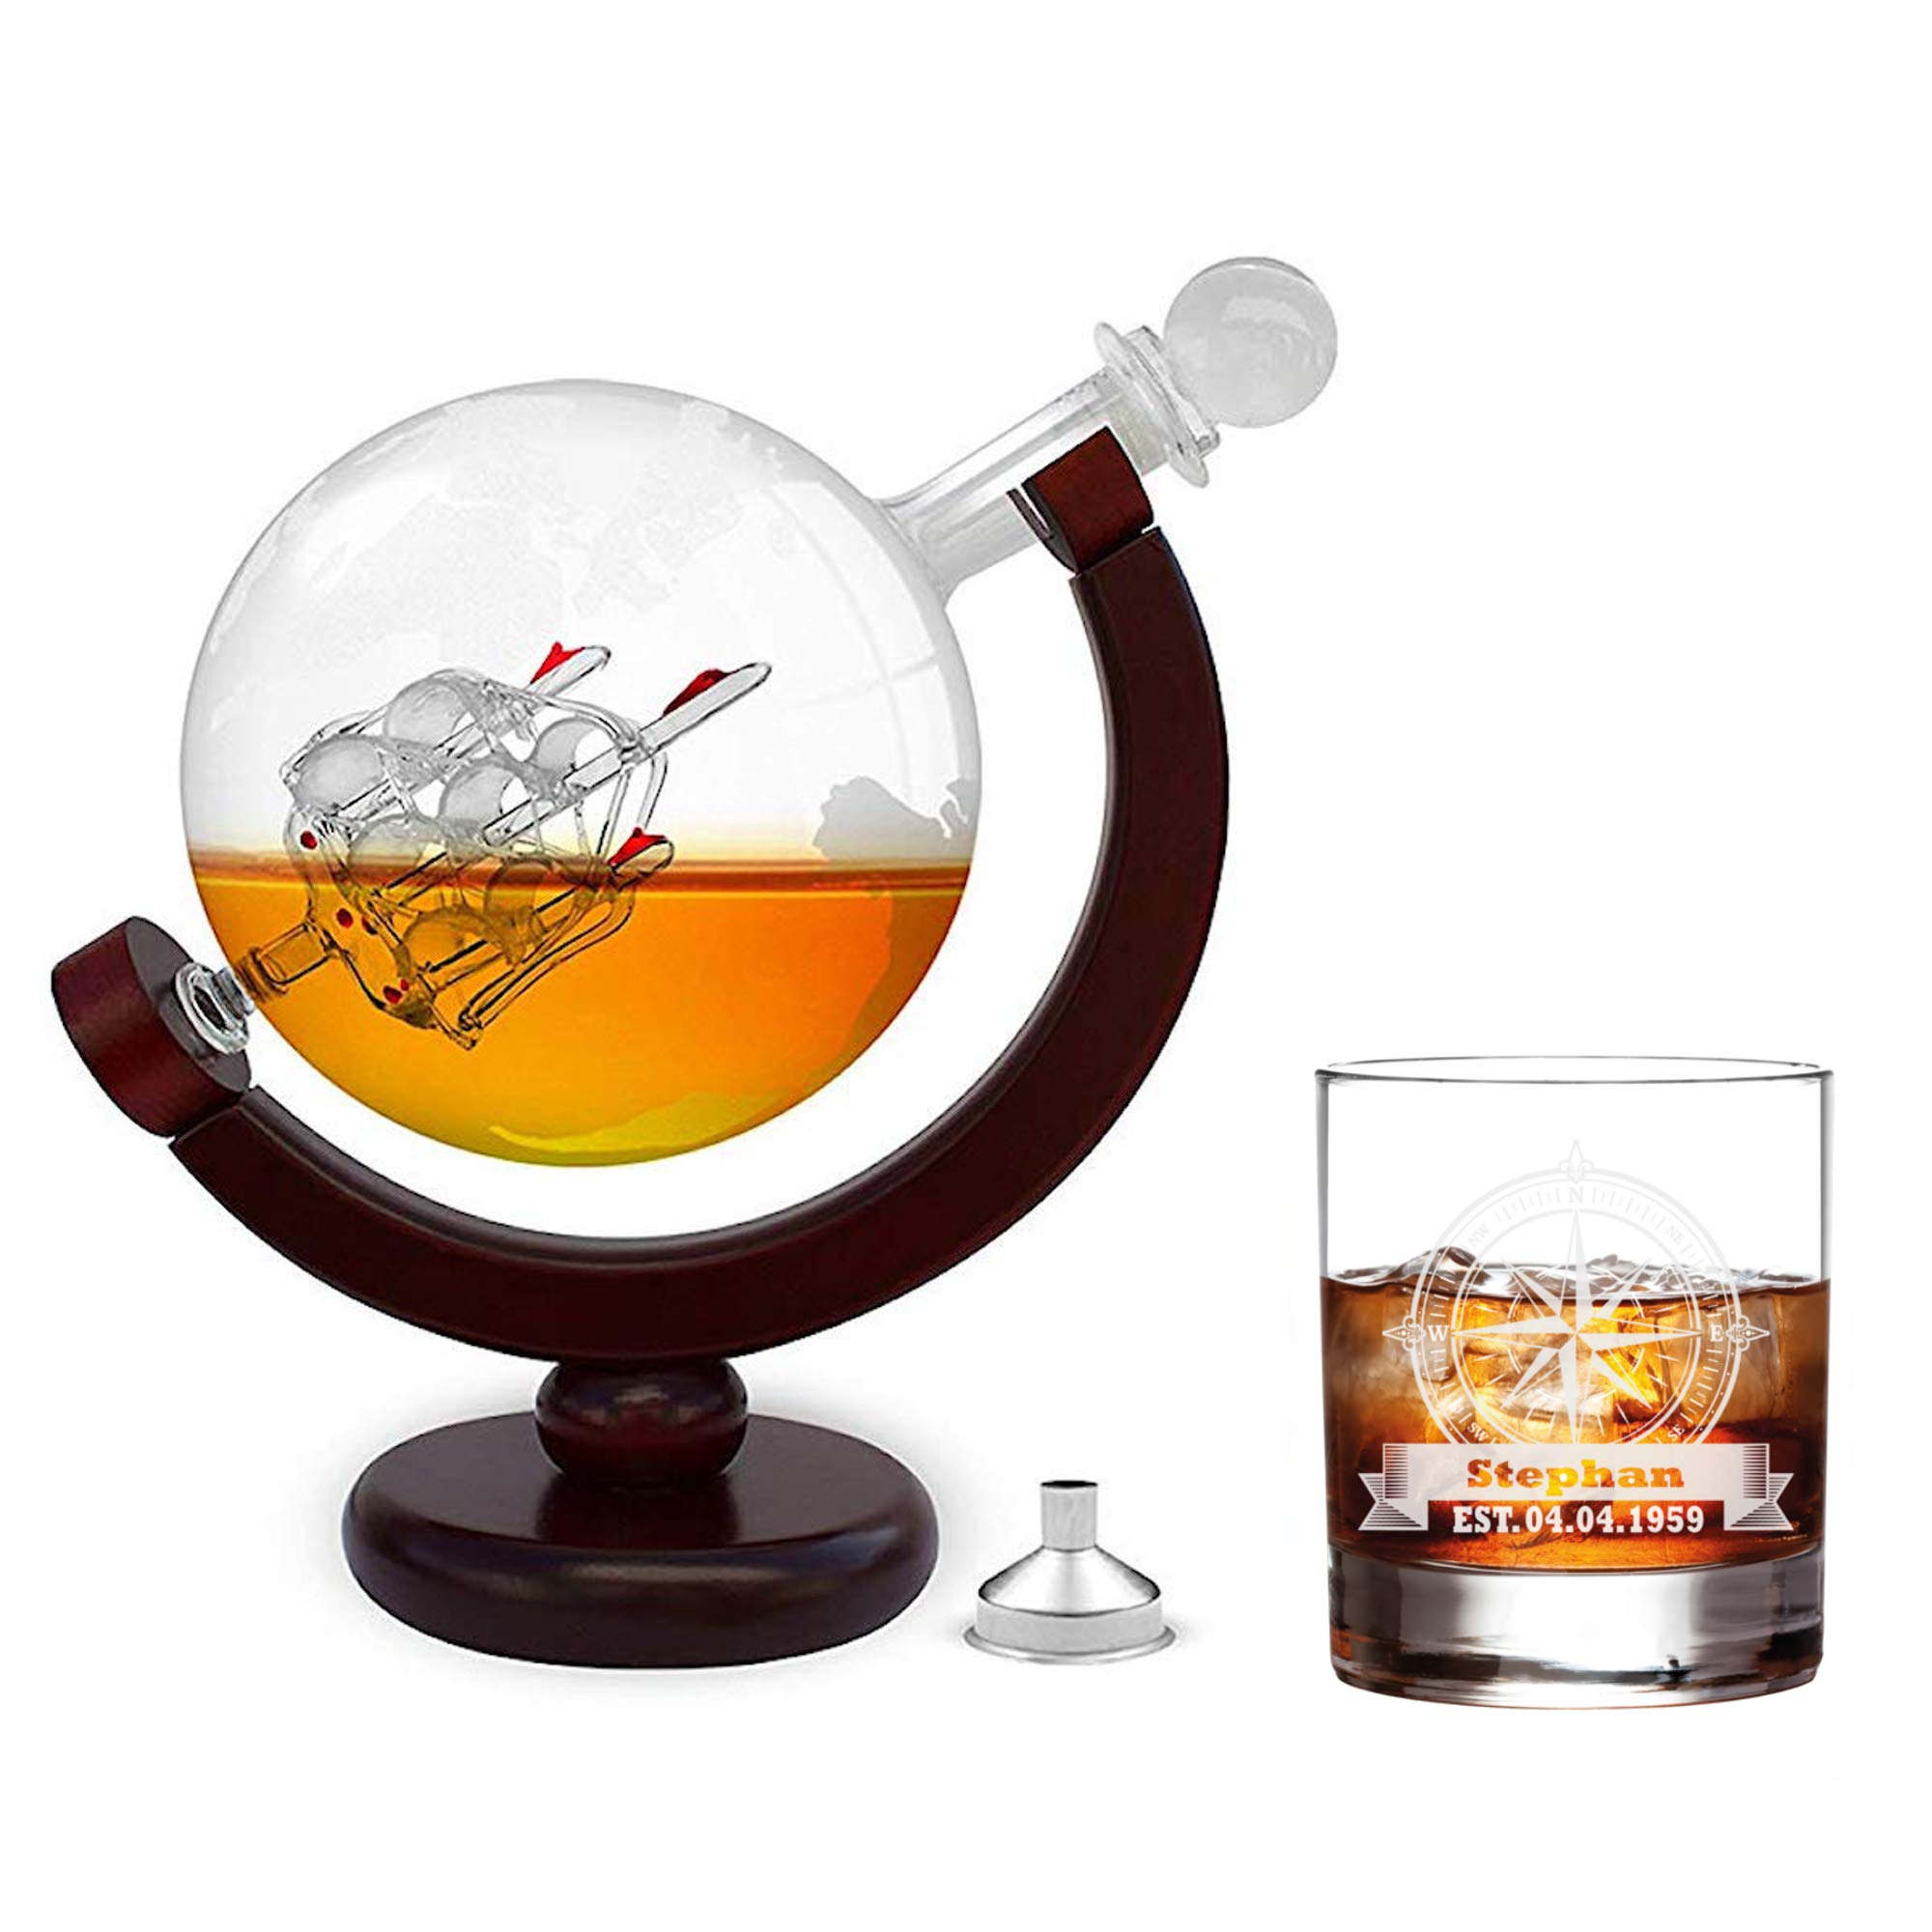 FORYOU24 Whiskeykaraffe im Globus Design + Whiskeyglas mit Gravur - Weltkugel Dekanter aus Glas mit Segelschiff Dekor - Geschenk für Männer- Scotch Decanter - Hergestellt in Handarbeit